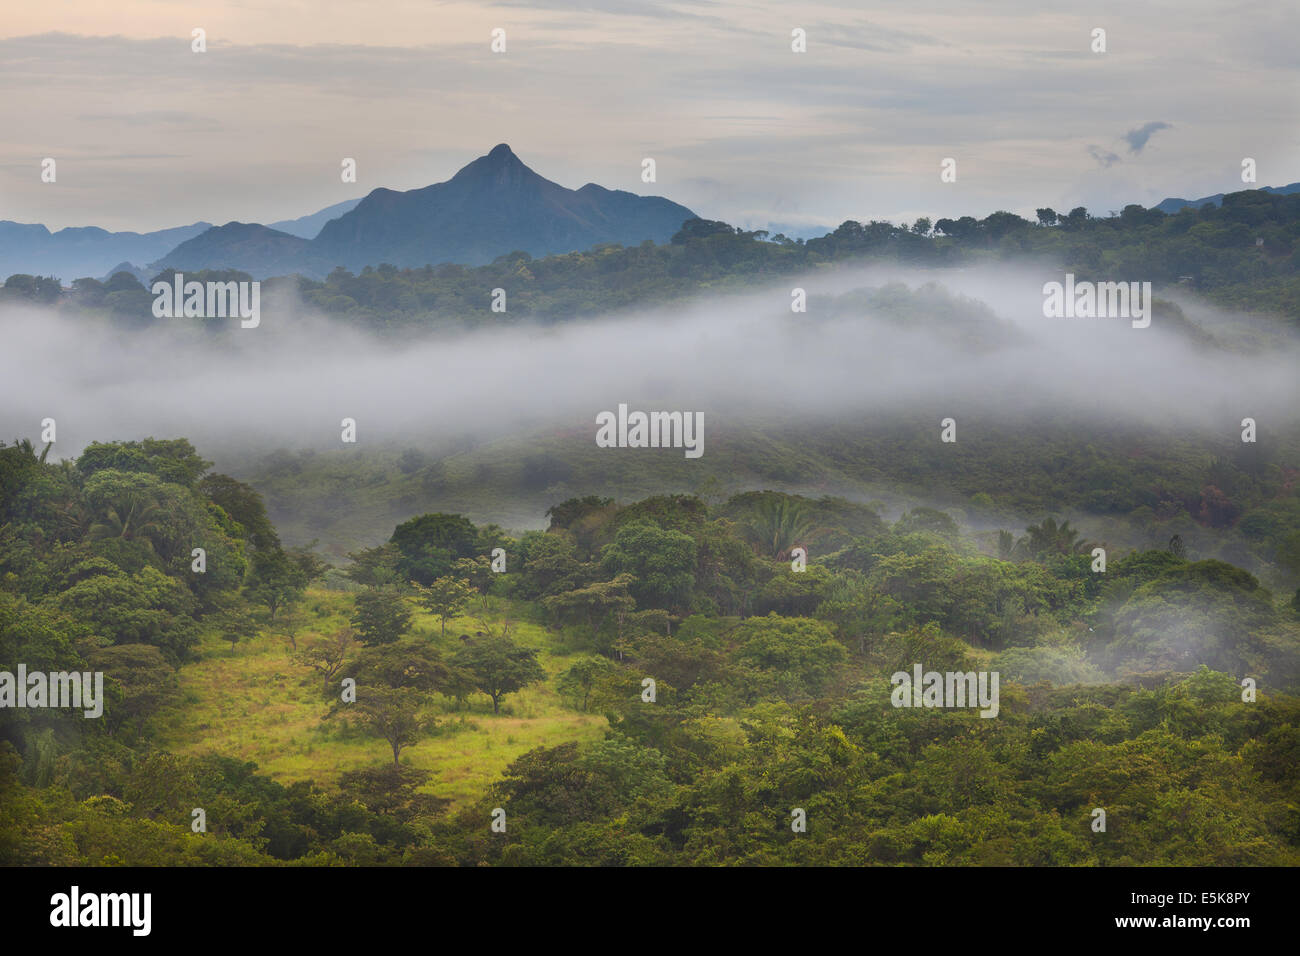 Misty paisajes al amanecer en el interior de la provincia de Coclé, la Cordillera Central, República de Panamá. La montaña Cerro Horario de apertura, de 560 m, se encuentra en el extremo Foto de stock